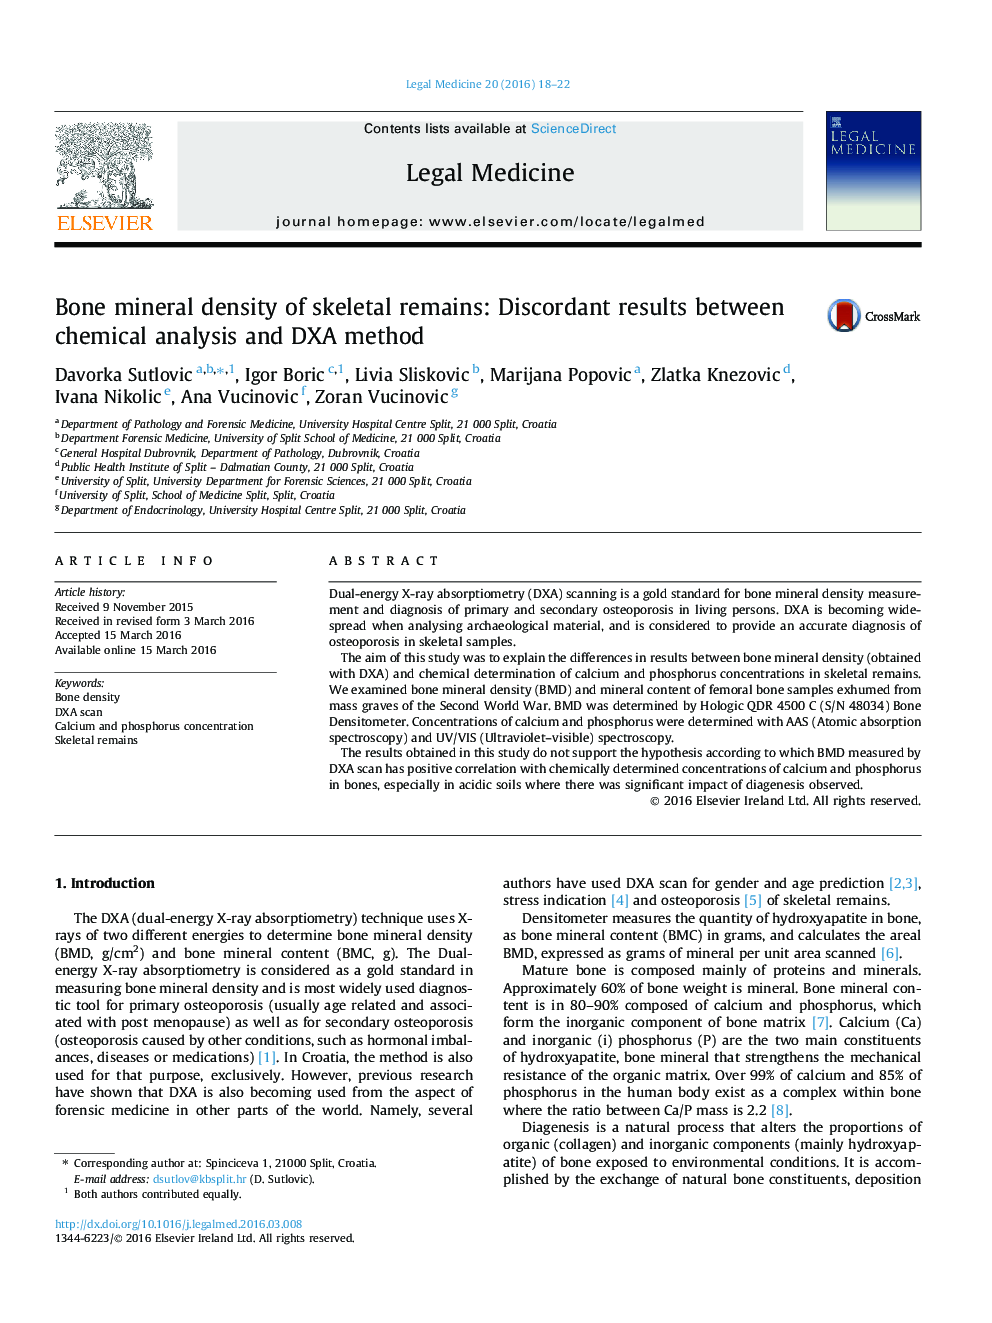 تراکم مواد معدنی استخوان از بقایای اسکلتی: نتایج ناسازگار بین تجزیه و تحلیل شیمیایی و روش DXA